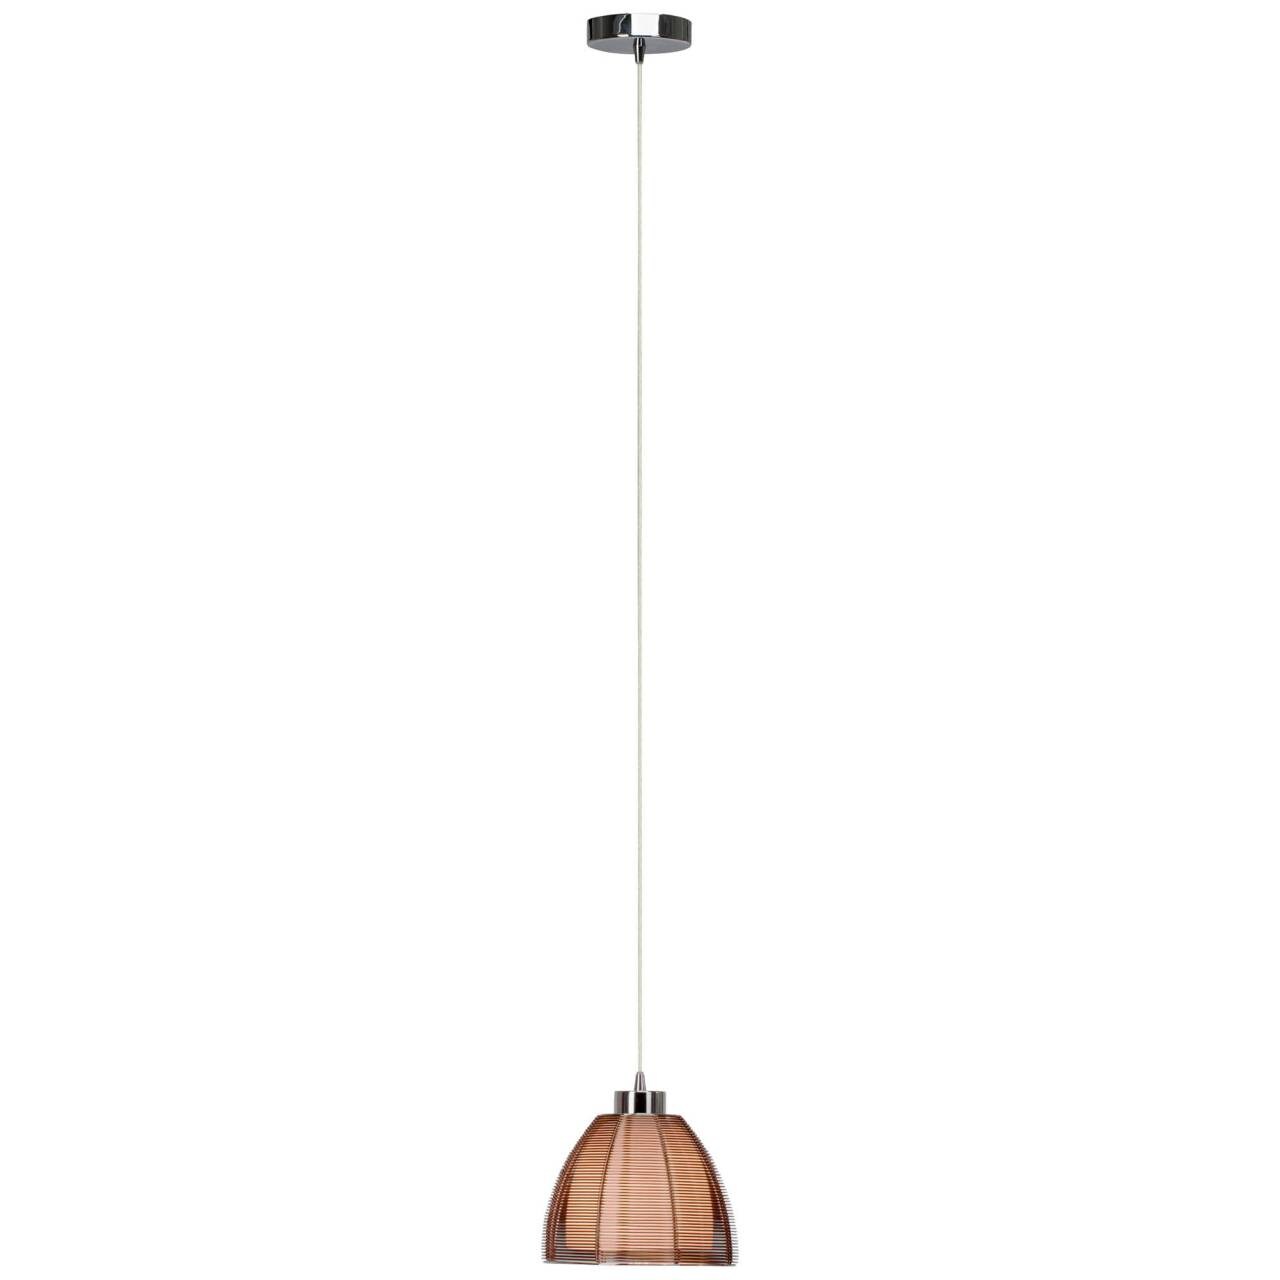 BRILLIANT Lampe Relax Pendelleuchte 20cm bronze/chrom   1x A60, E27, 60W, g.f. Normallampen n. ent.   In der Höhe einste